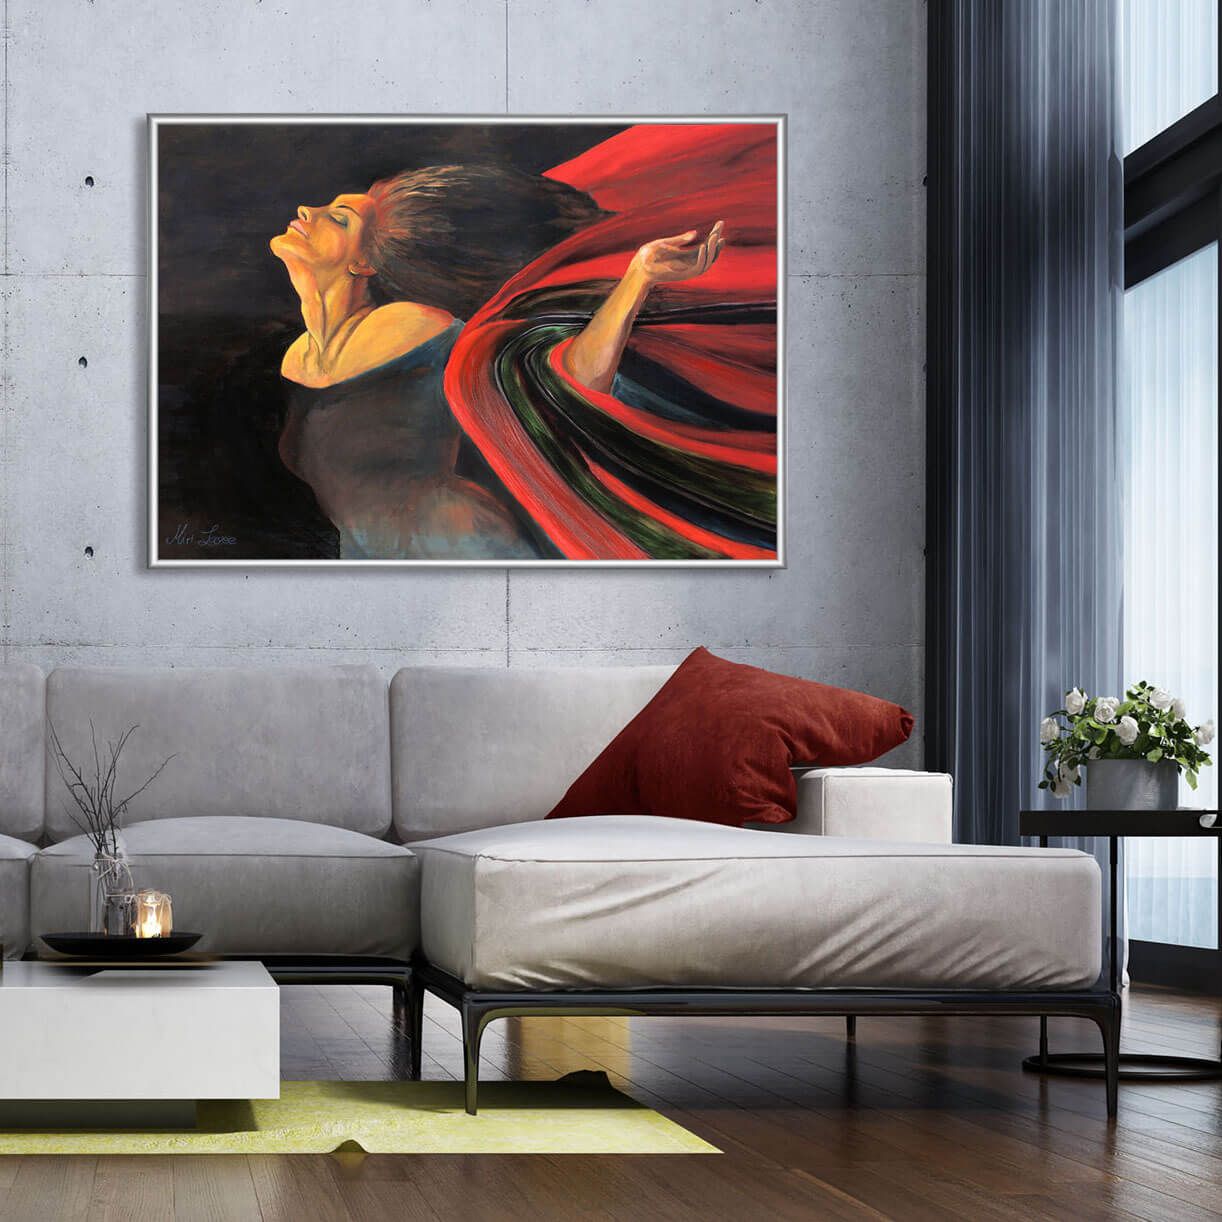 ציור אישה בצבעים שחור ואדום הציור עפה מקולקצית הציורים "צבעי מקסיקו" תמונה בסלון מעוצב מעל ספה בהירה ציירת מירי לביא